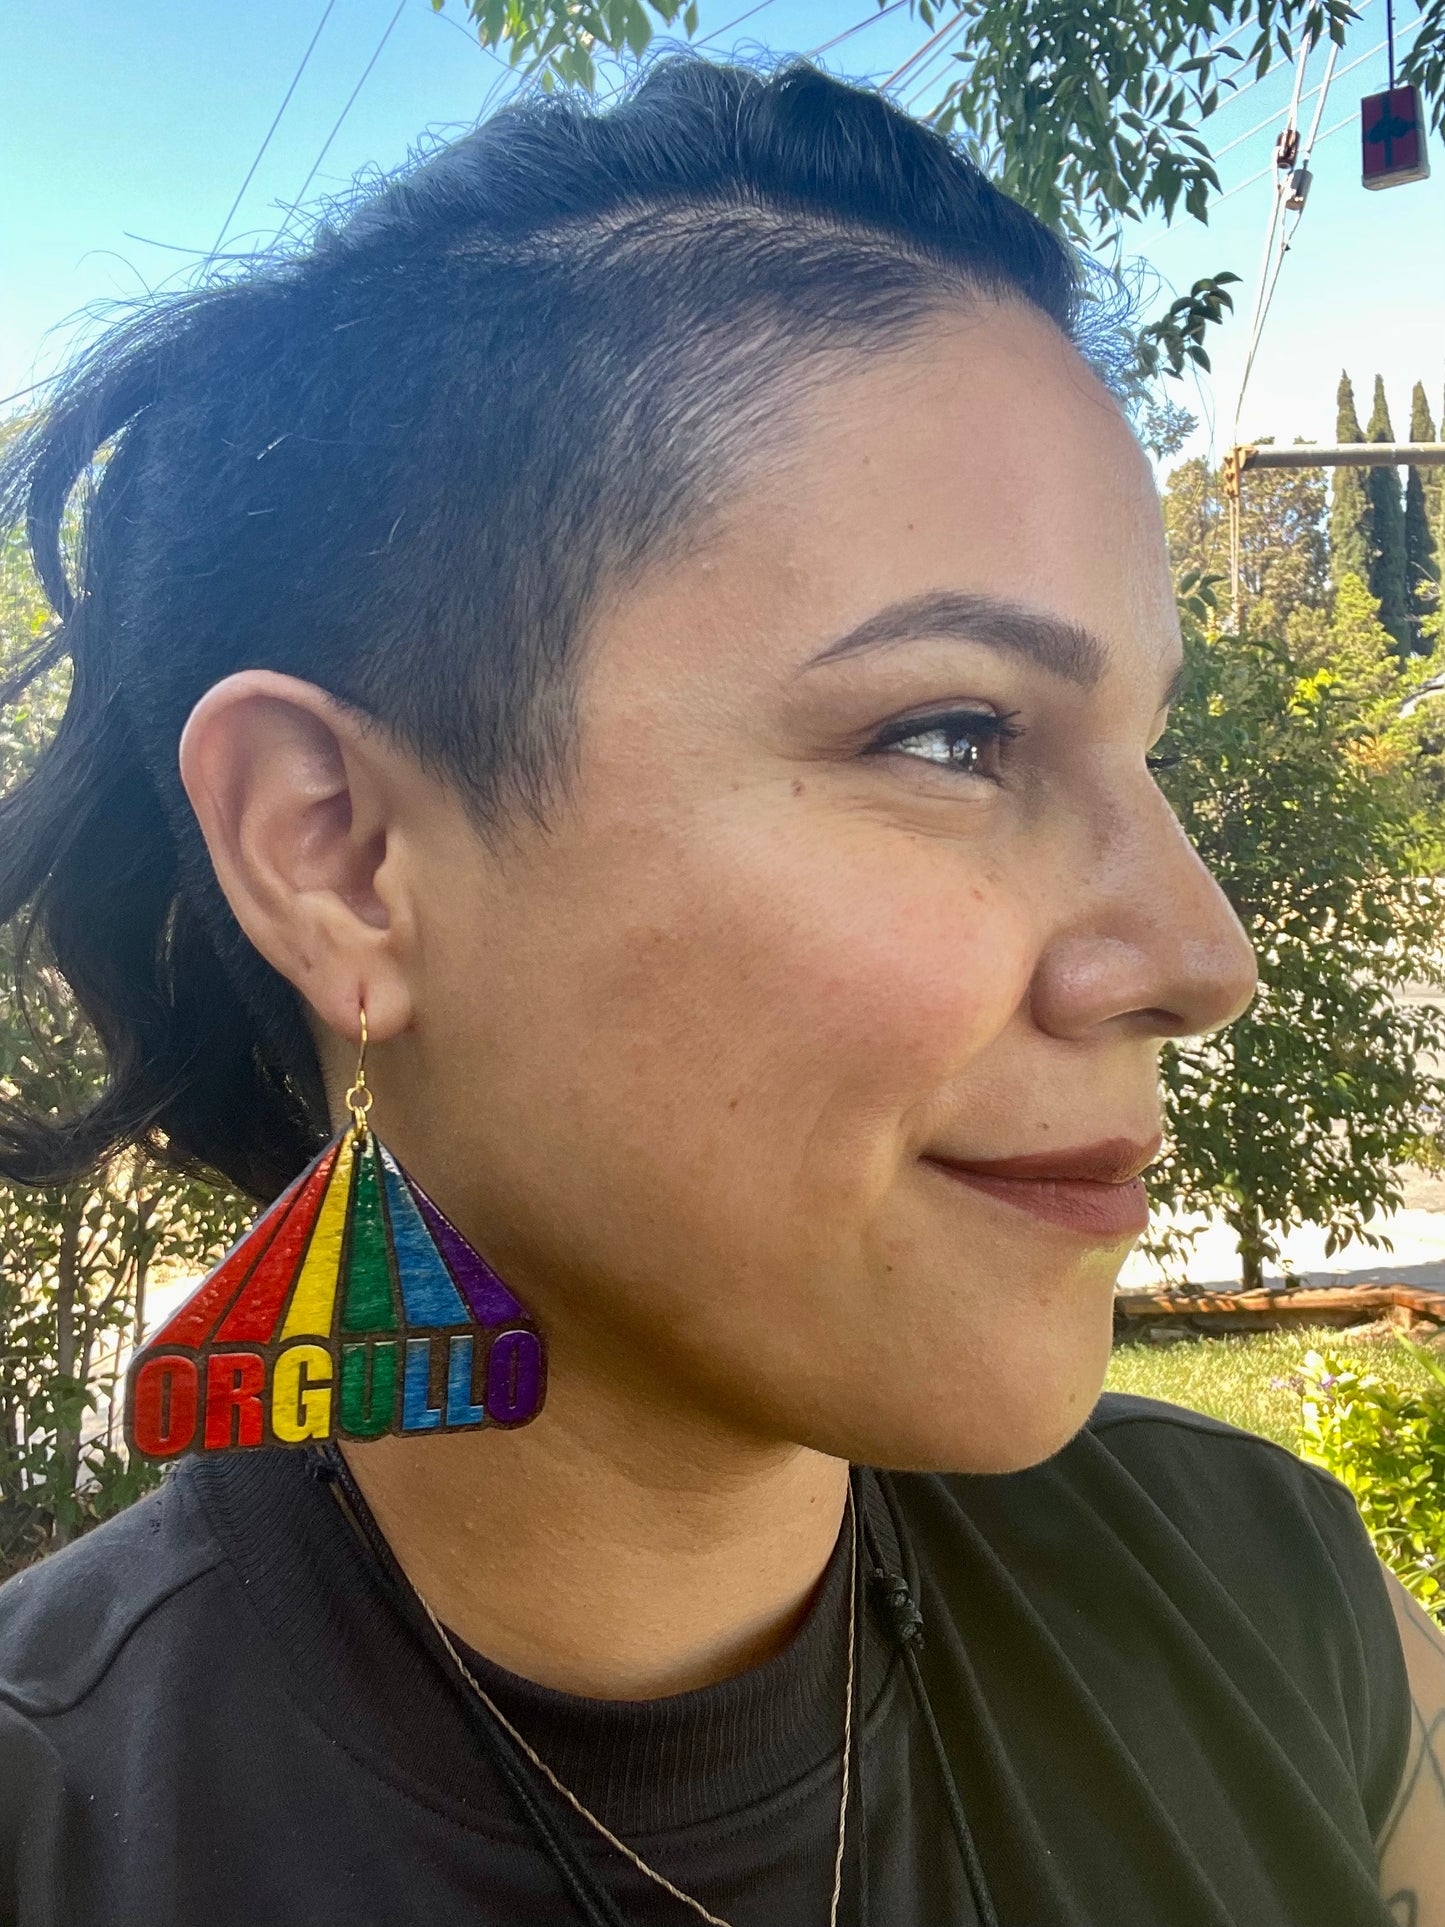 "Orgullo" Pride Earrings